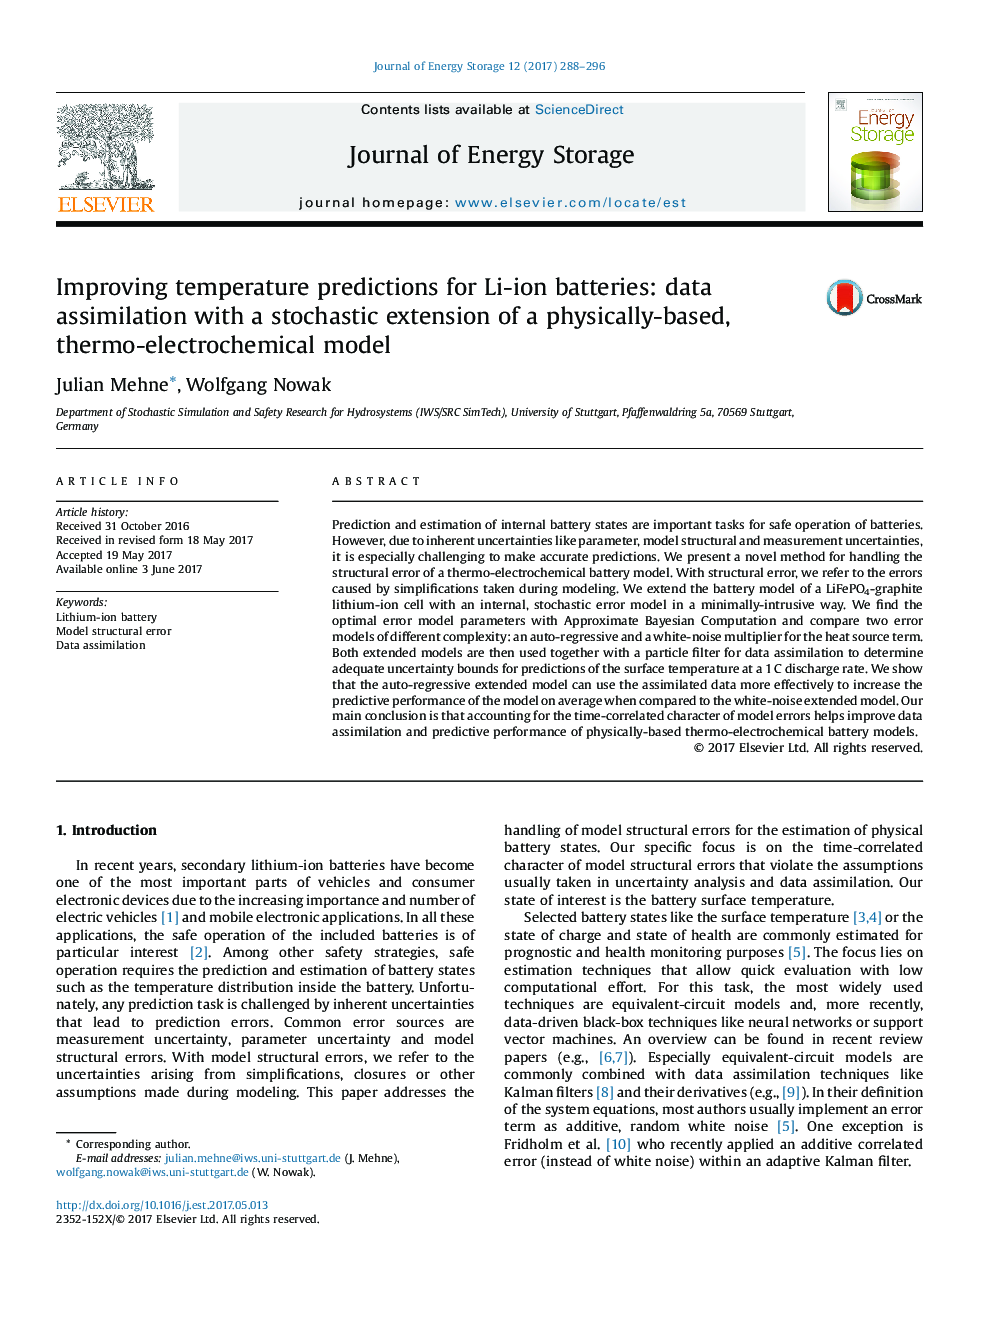 بهبود پیش بینی های دما برای باتری های لیتیوم یون: جذب داده ها با گسترش تصادفی یک مدل مبتنی بر فیزیکی، ترمو الکتروشیمیایی 